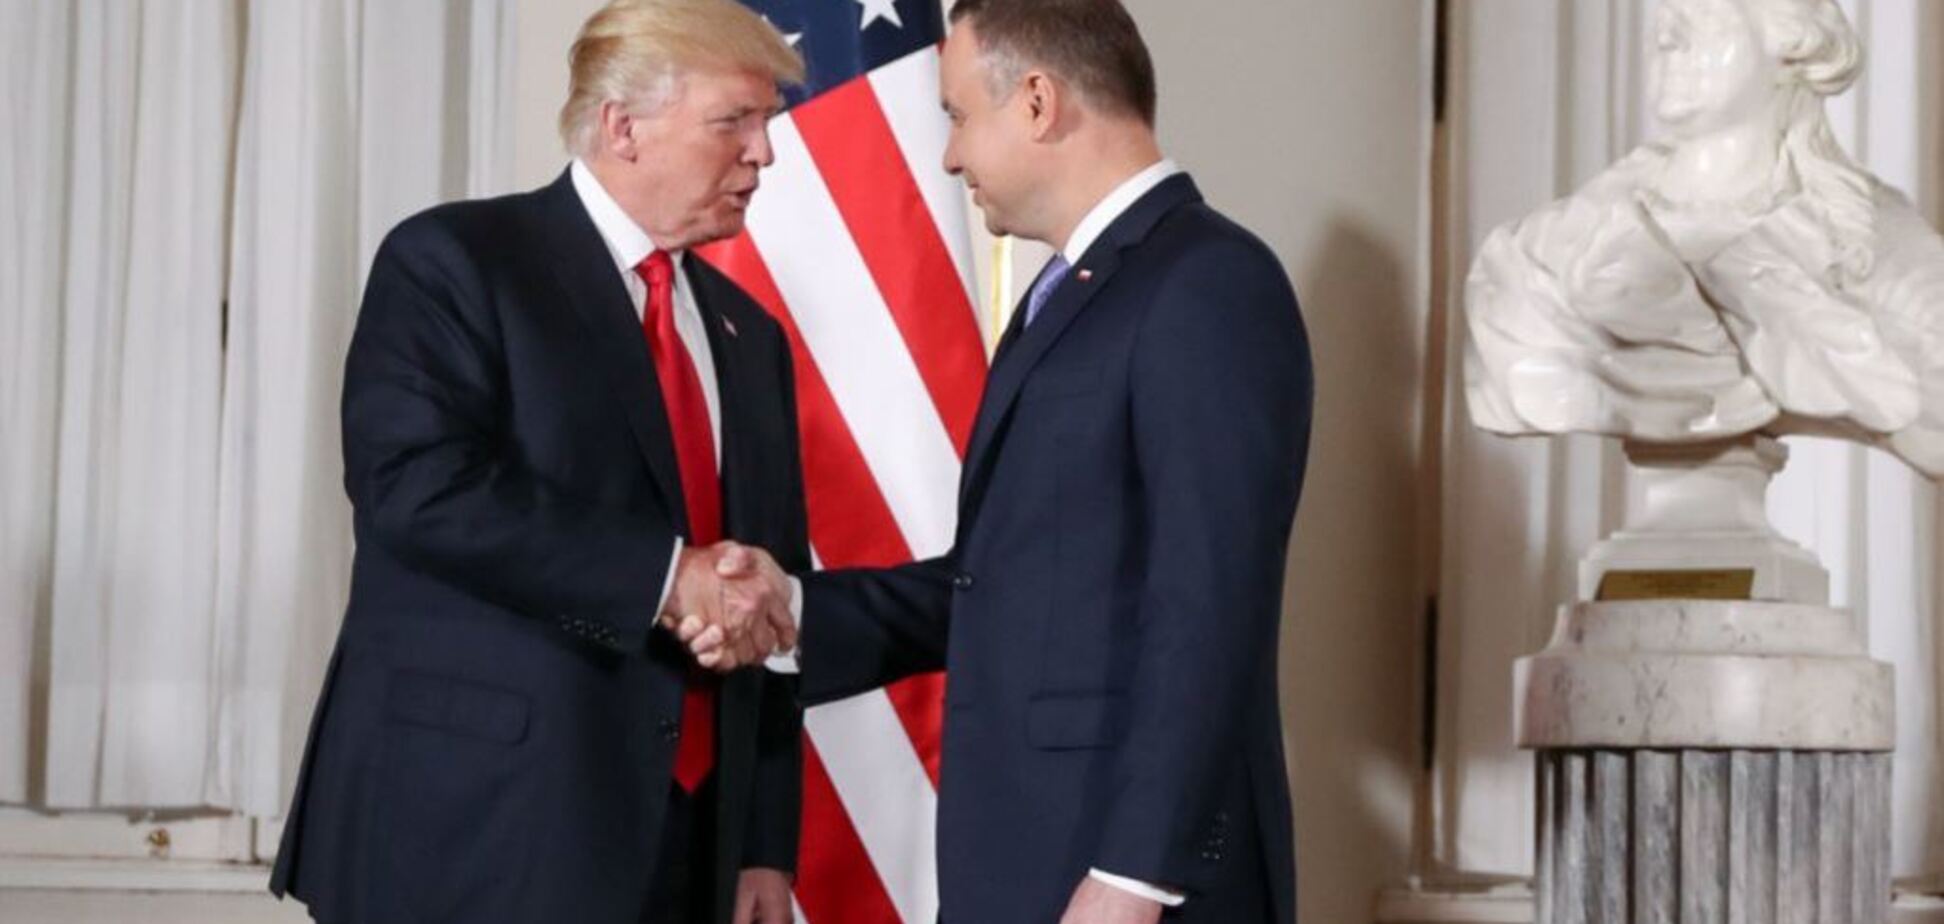 ''Целует руку!'' В Польше вспыхнул скандал из-за ''позорного'' фото Дуды с Трампом